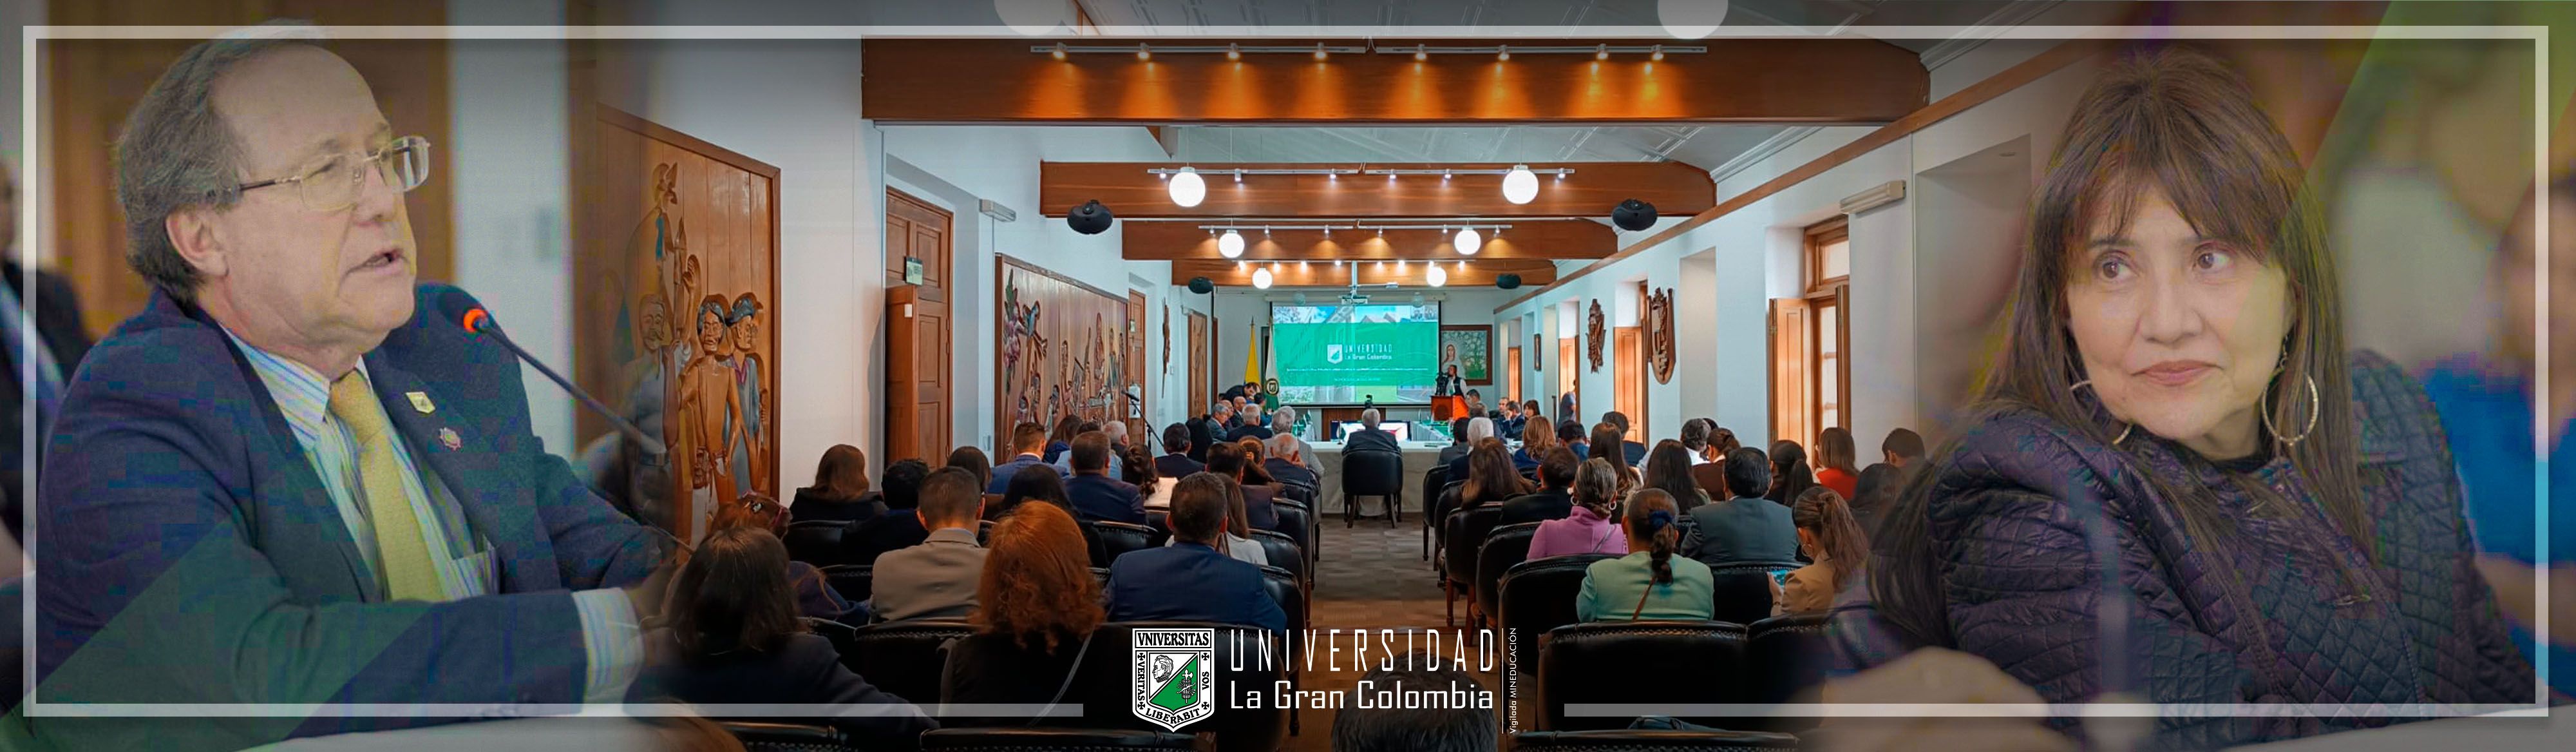 La Universidad La Gran Colombia avanza en el proceso de apreciaciones iniciales de Acreditación Institucional en Alta Calidad Multicampus